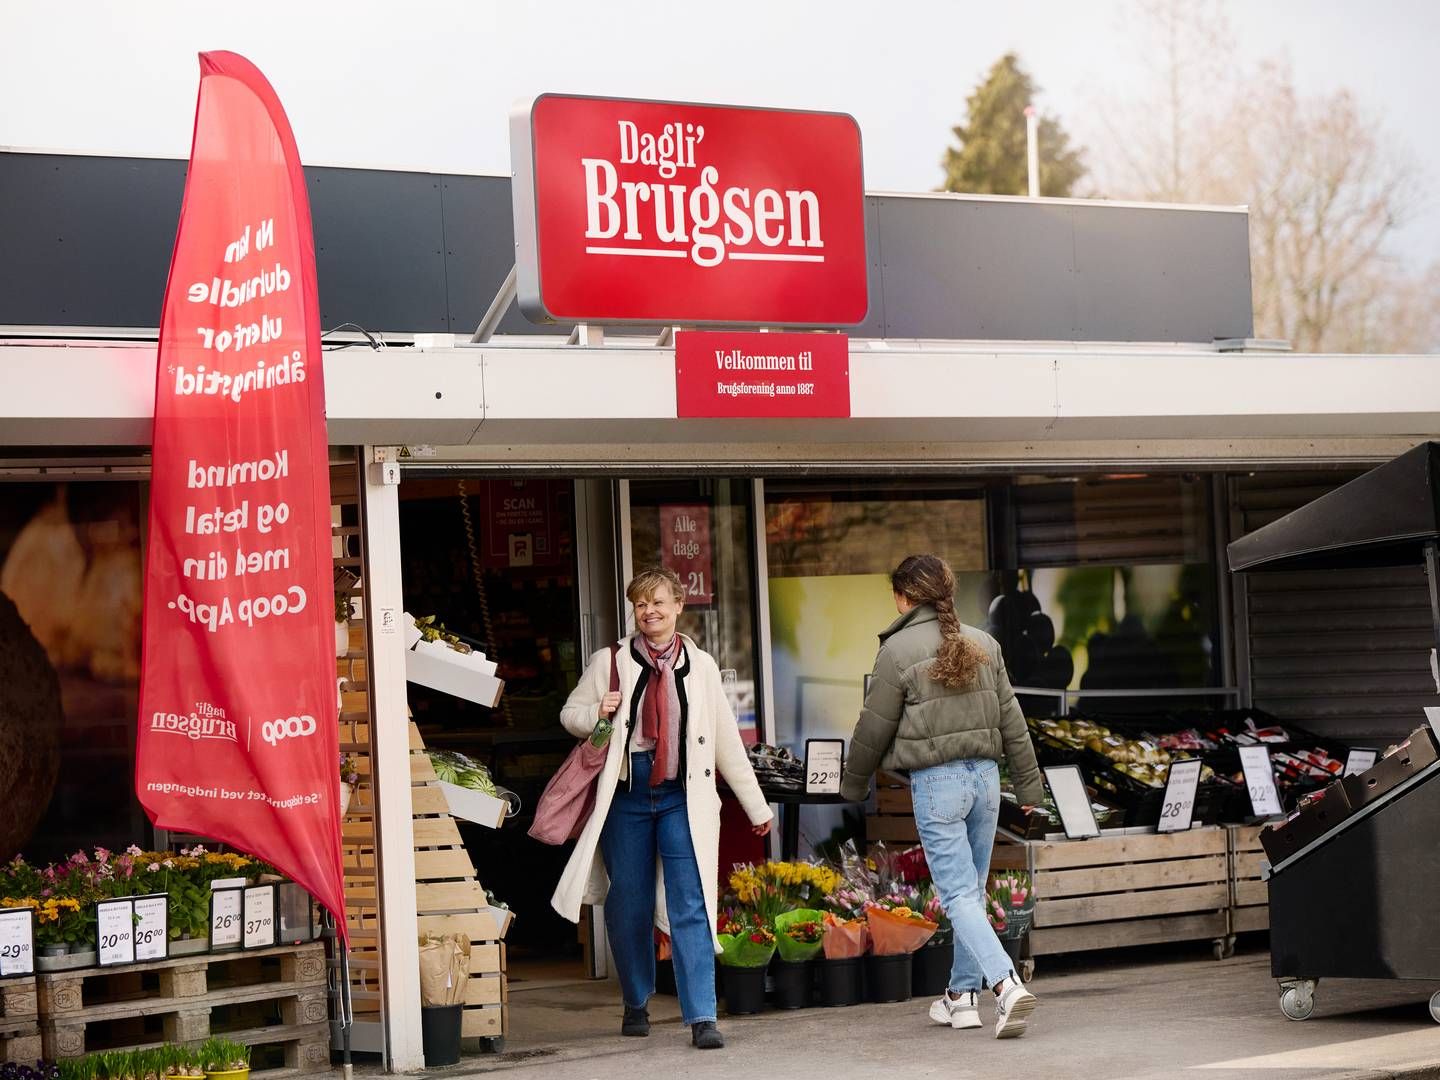 Dagli'brugsen-kæden, som fremover blot skal hedde Brugsen, består af 290 butikker. 207 af dem er ejet af en selvstændig brugsforening. | Foto: Niclas Jessen/coop/pr